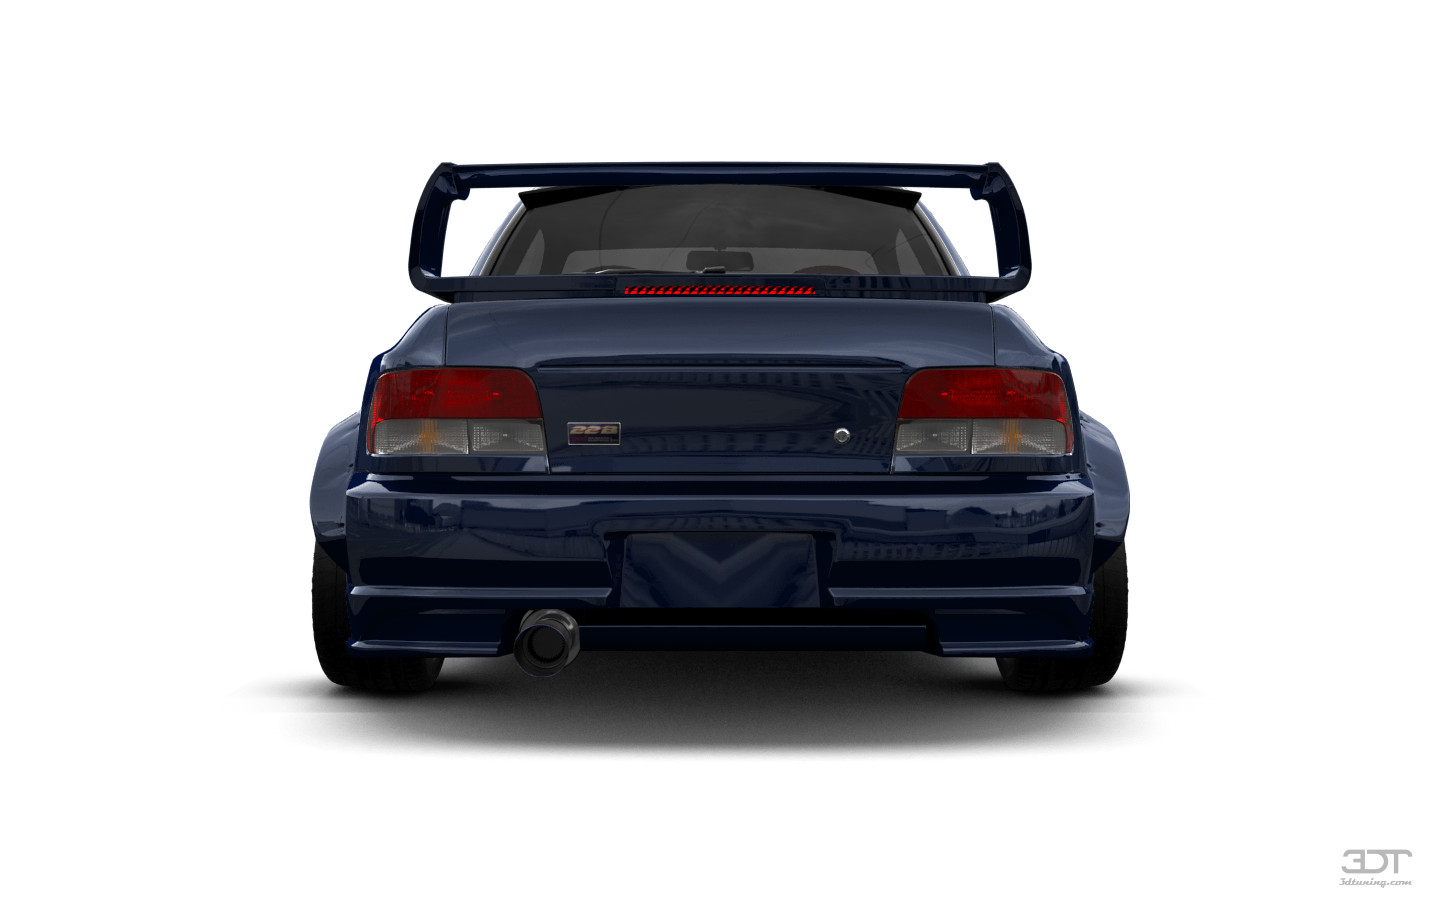 Subaru Impreza WRX STI 22B 2 Door Coupe 2000 tuning